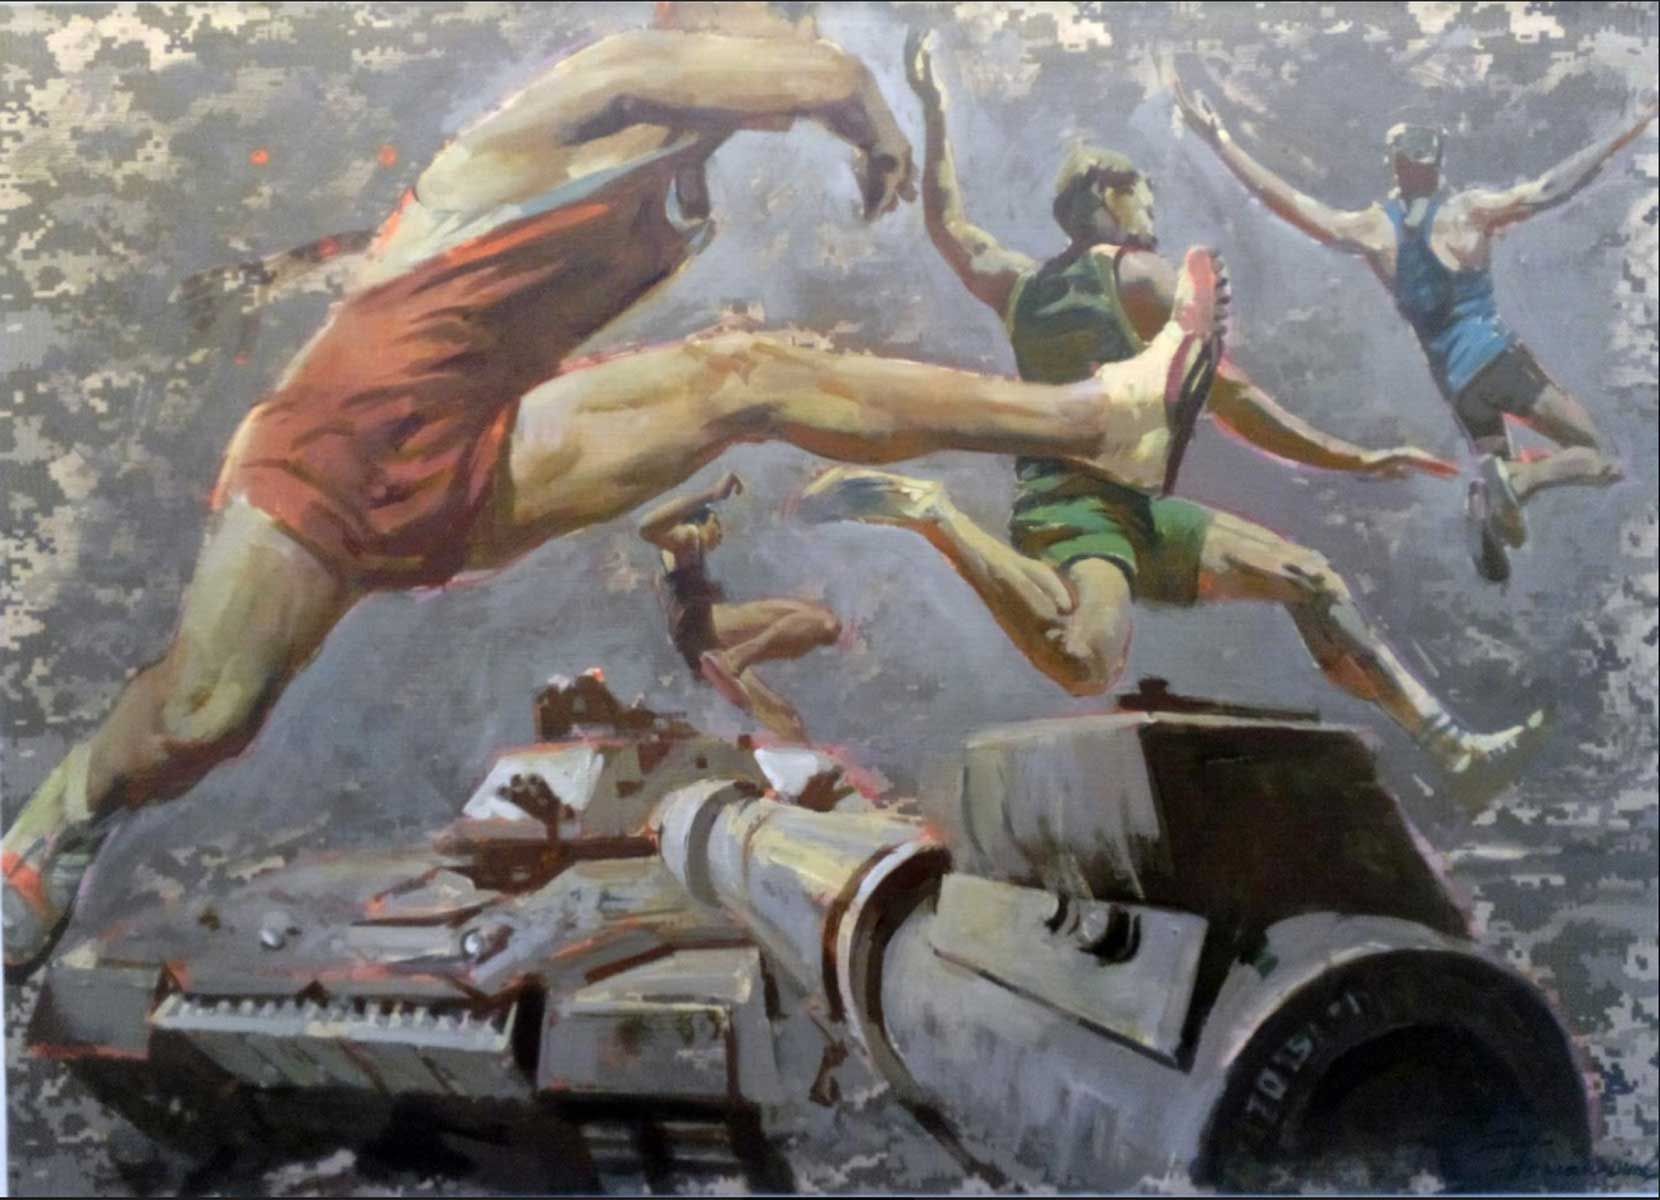 Original painting by Ed Potapenkov. "Jumping" Contemporary art in Satija Gallery